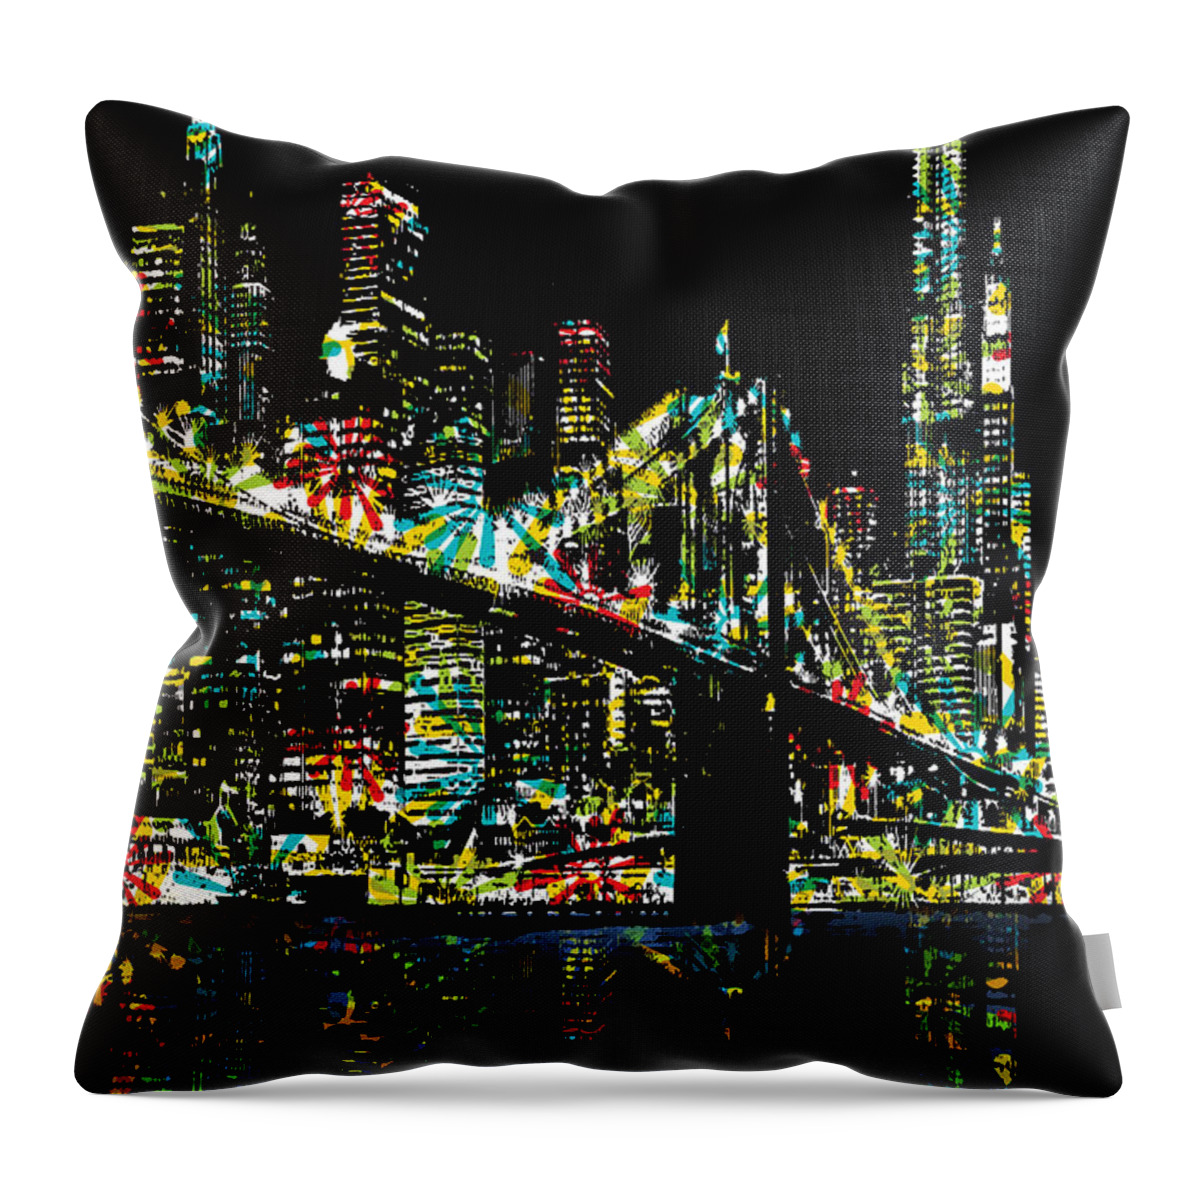 Ny Throw Pillow featuring the digital art New York City by Andrzej Szczerski